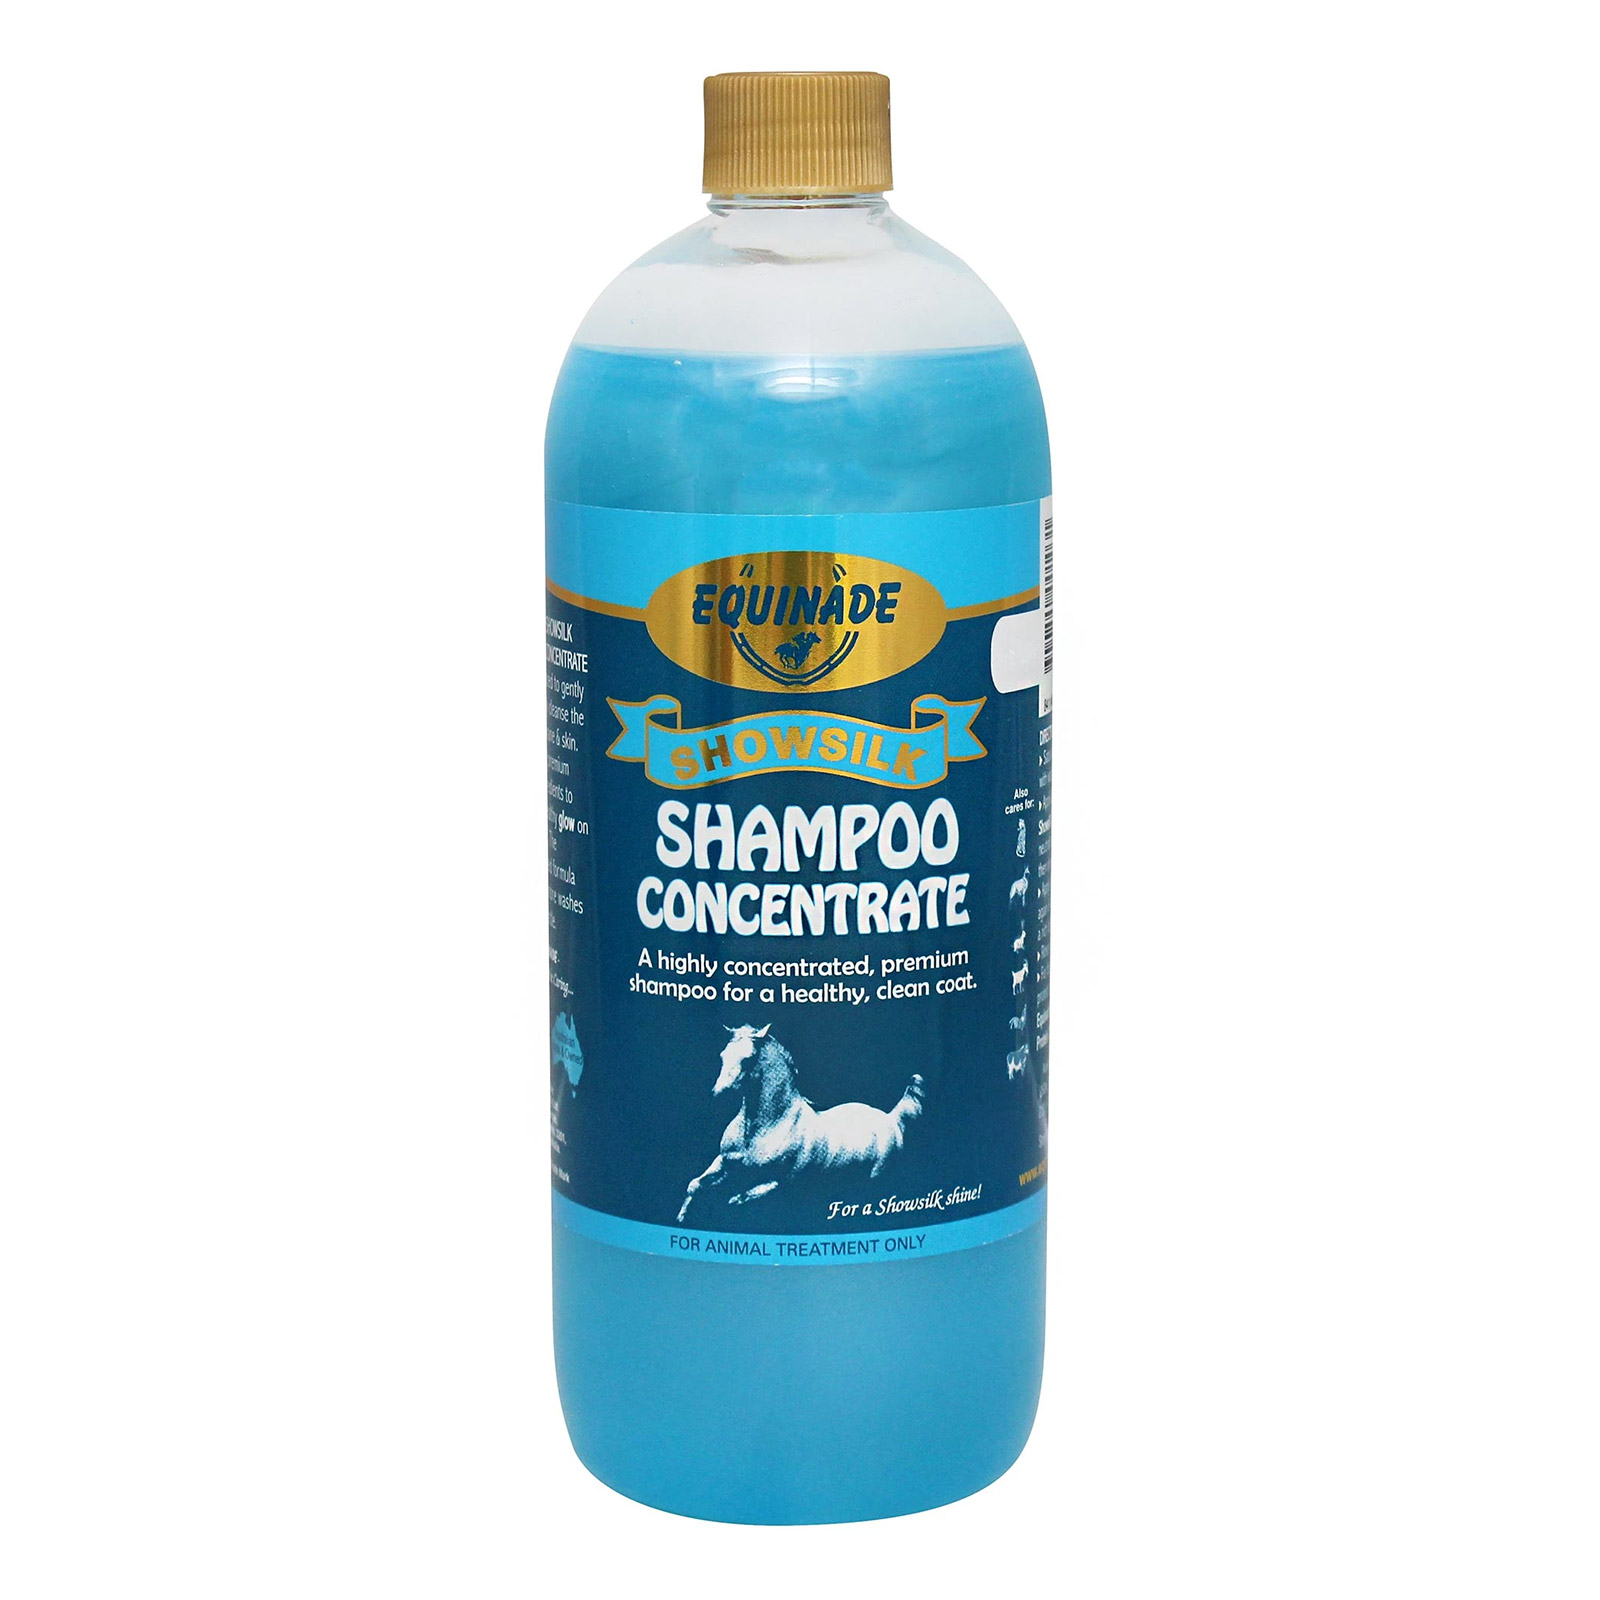 Equinade Showsilk Concentrate Shampoo